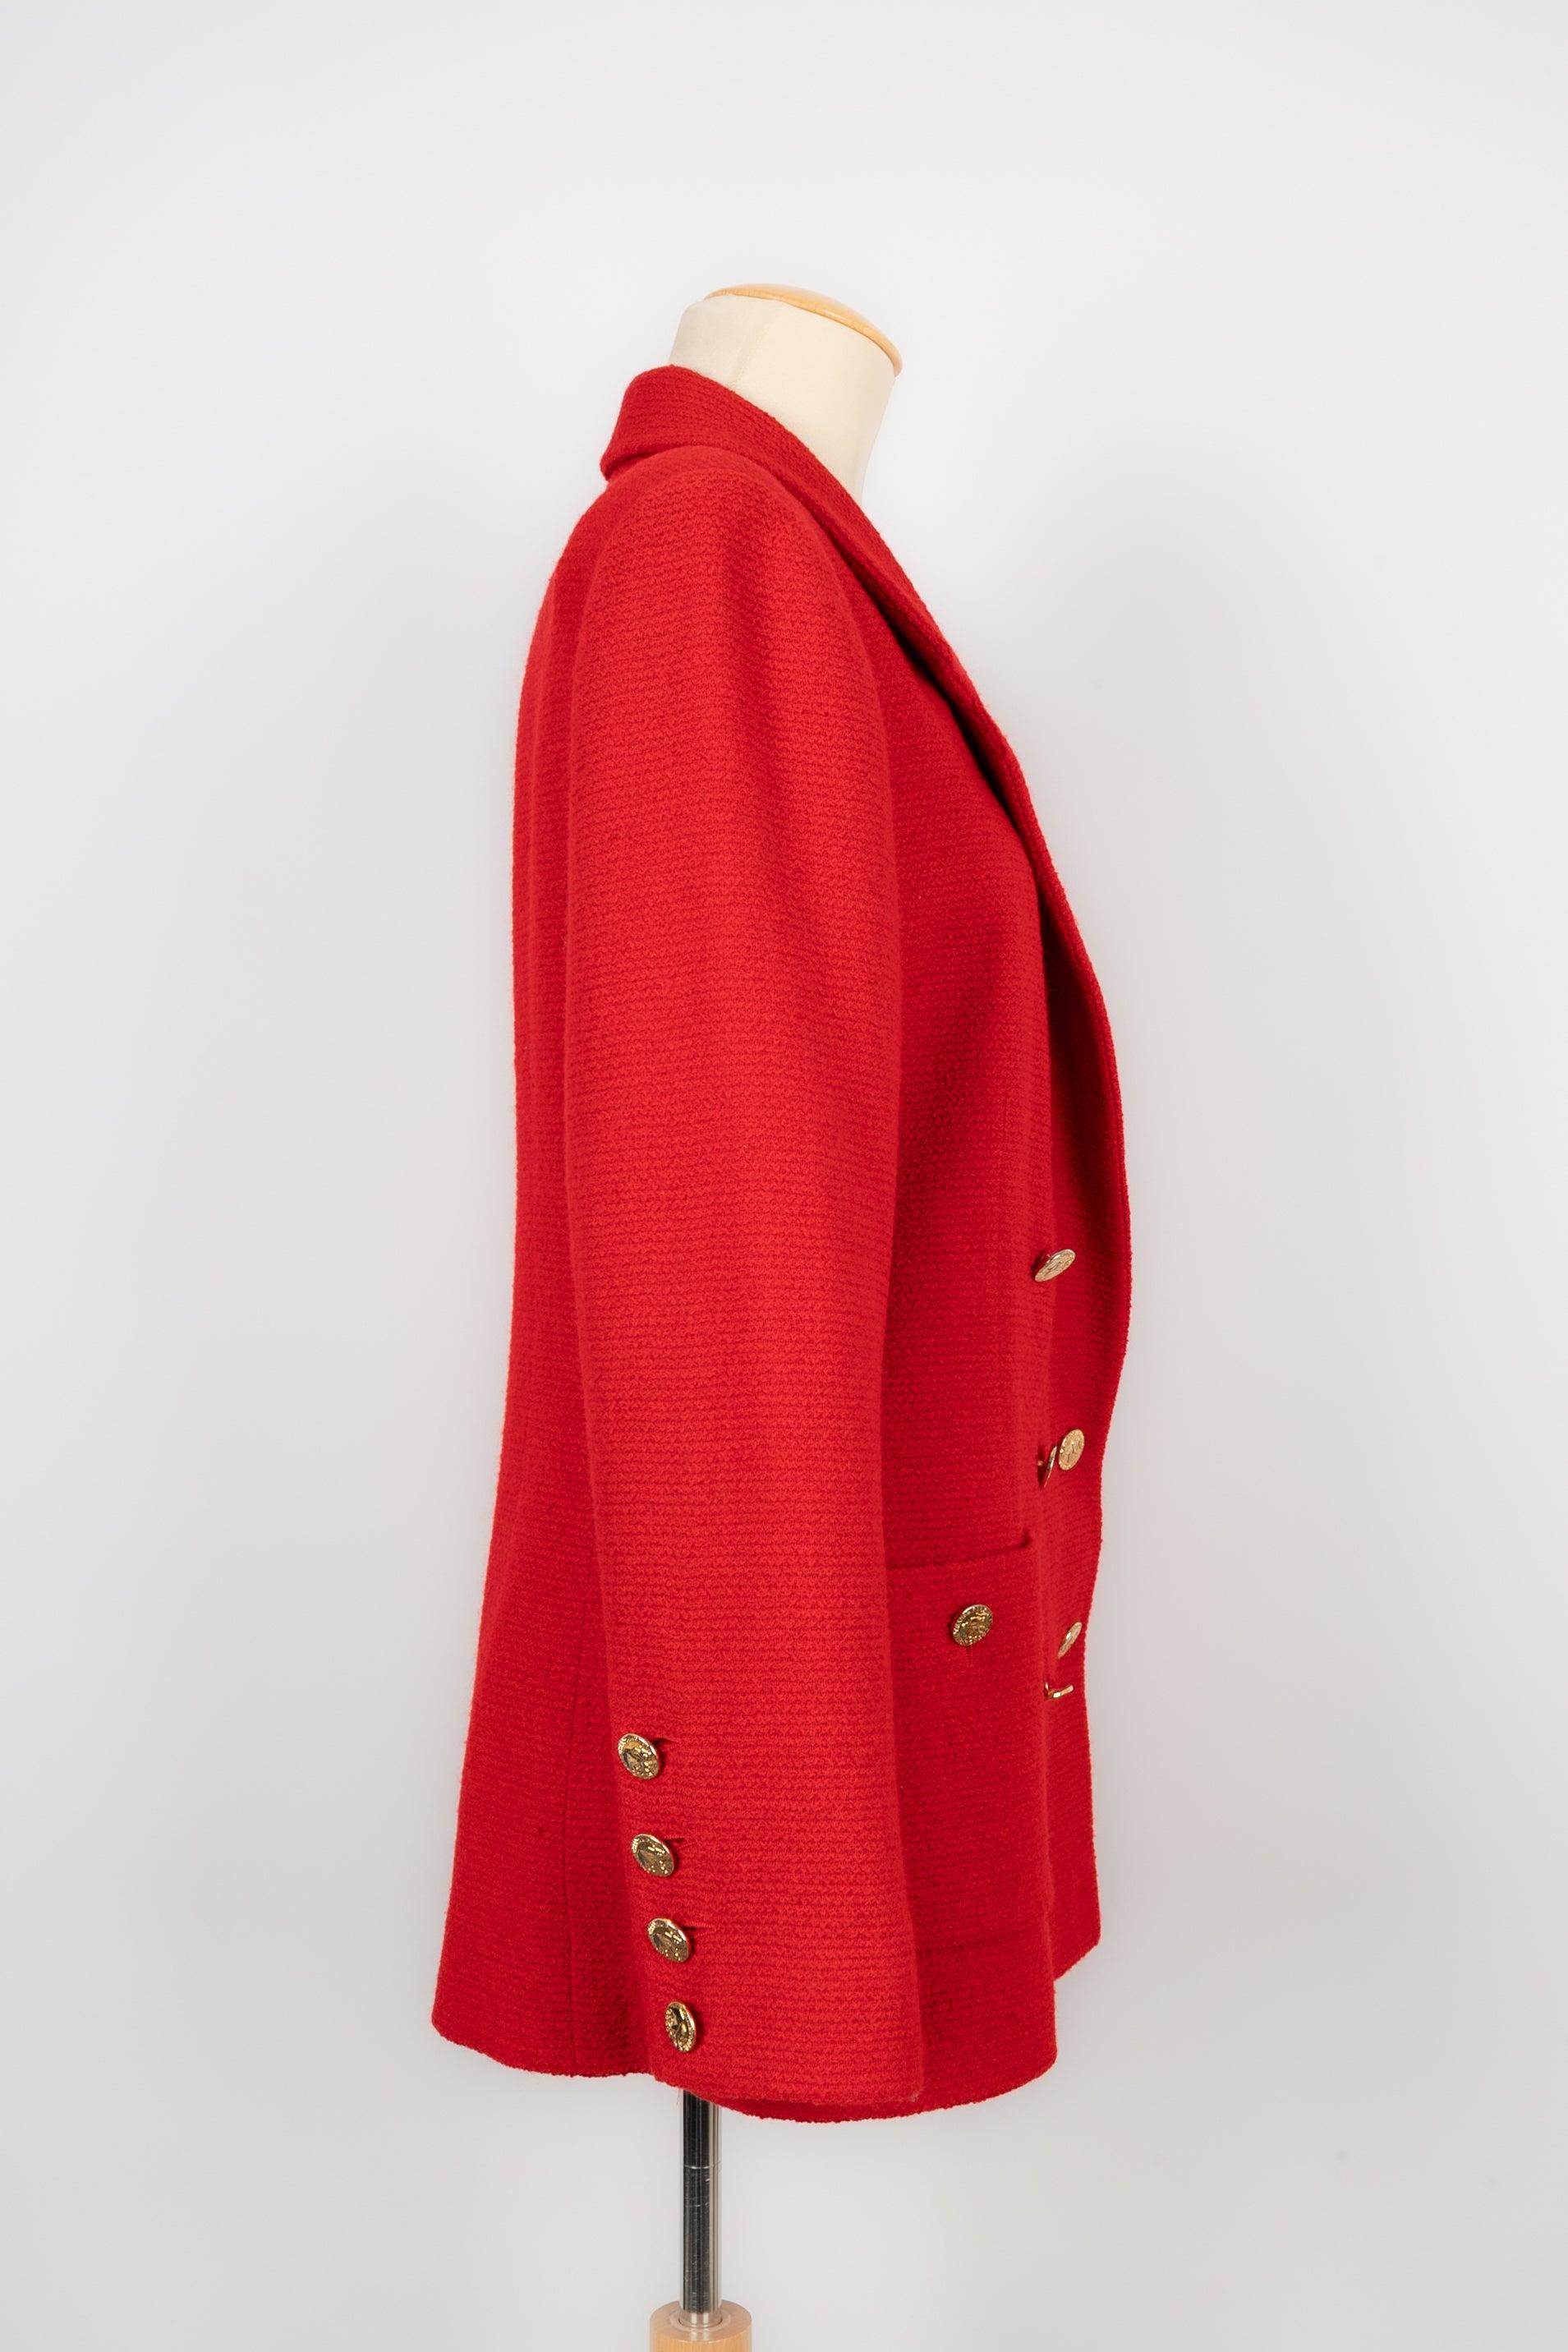 Chanel - (Made in France) Rote Tweedjacke mit Seidenfutter. Keine Größe noch Zusammensetzung Label, es passt ein 42FR. Goldene Metallknöpfe, die Elefanten darstellen.

Zusätzliche Informationen:
Zustand: Sehr guter Zustand
Abmessungen: